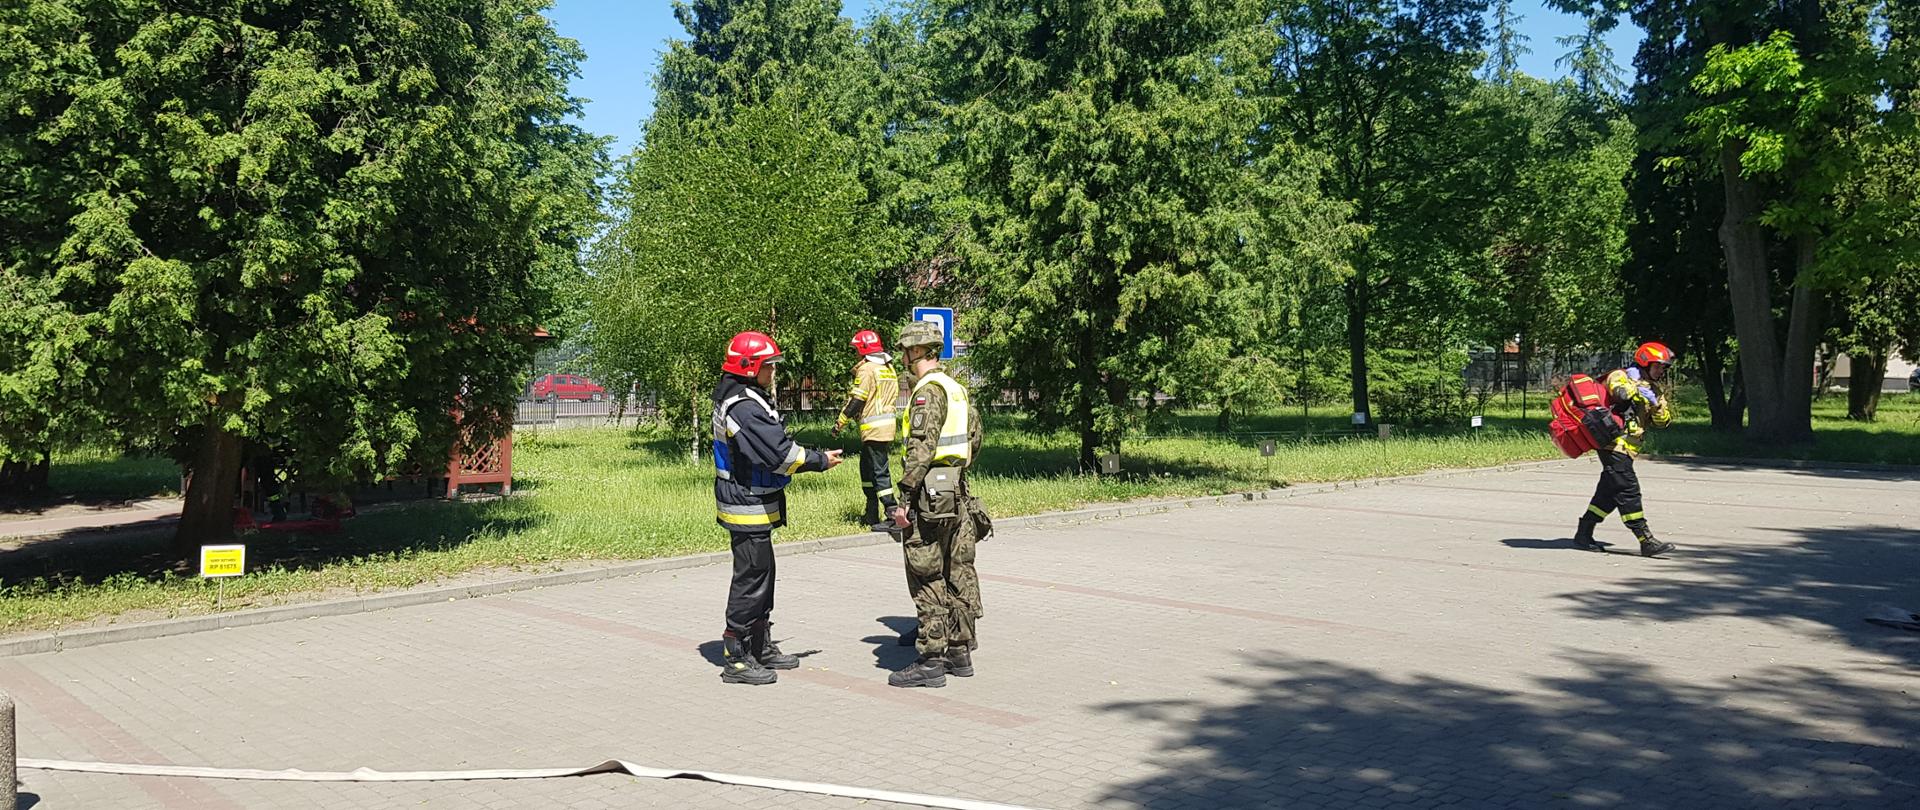 Kierujący działaniami ratowniczymi z Jednostki Ratowniczo Gaśniczej z Łomży pozyskuje informacje niezbędne na temat budynku do prowadzenia działań ratowniczo - gaśniczych od żołnierza.